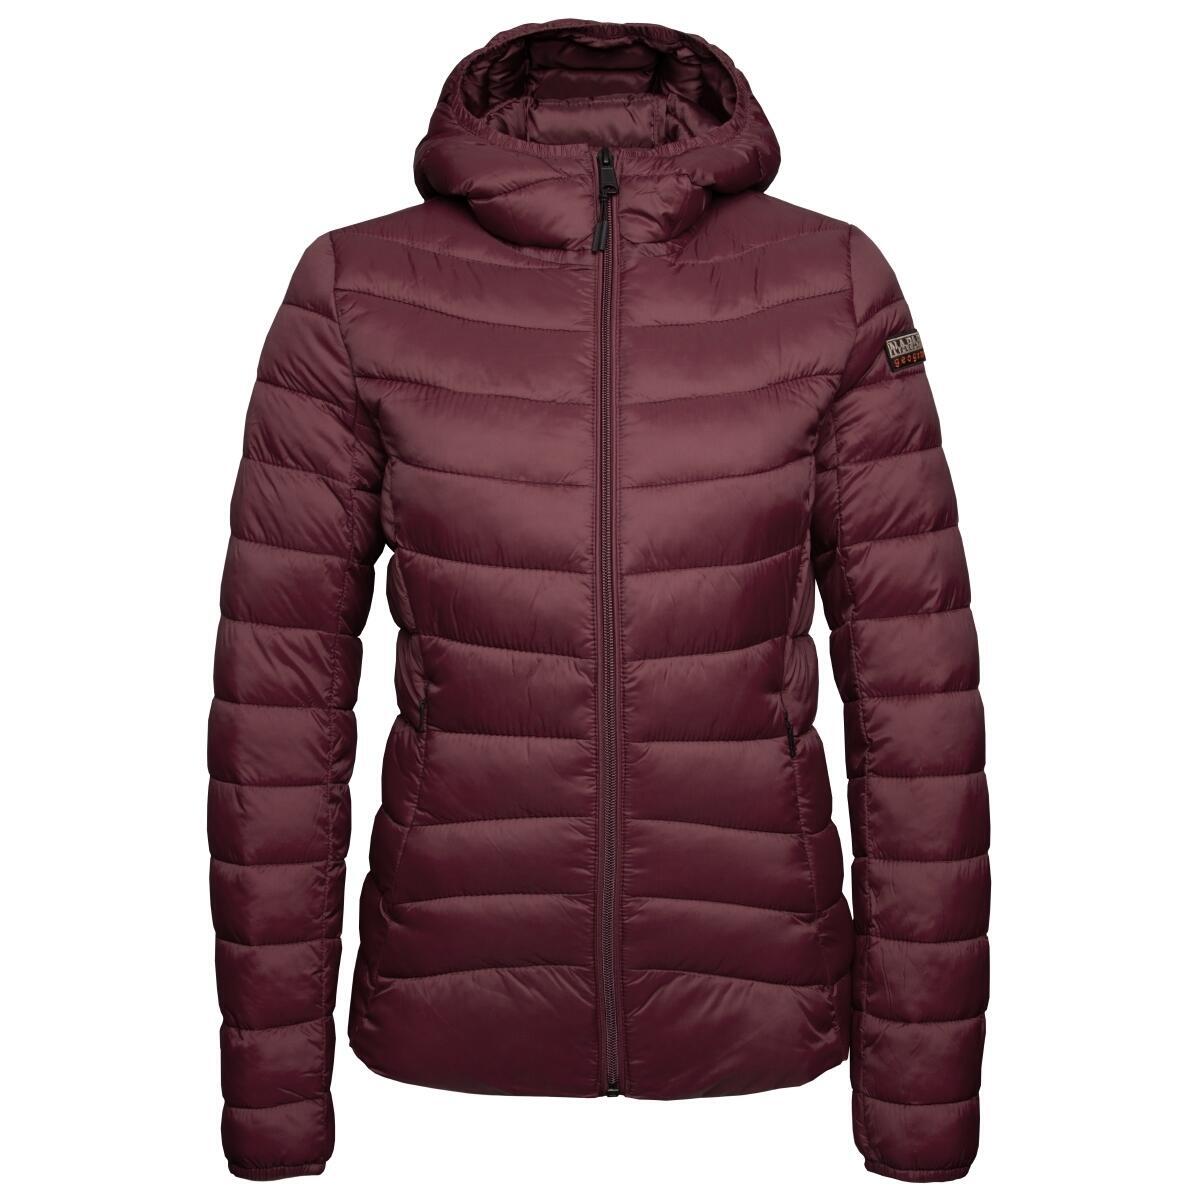 Куртка стеганая женская Napapijri Aerons WH 1, бордовый женская стеганая куртка с капюшоном повседневная толстая теплая стеганая куртка в клетку с хлопковой подкладкой зимняя уличная одежда